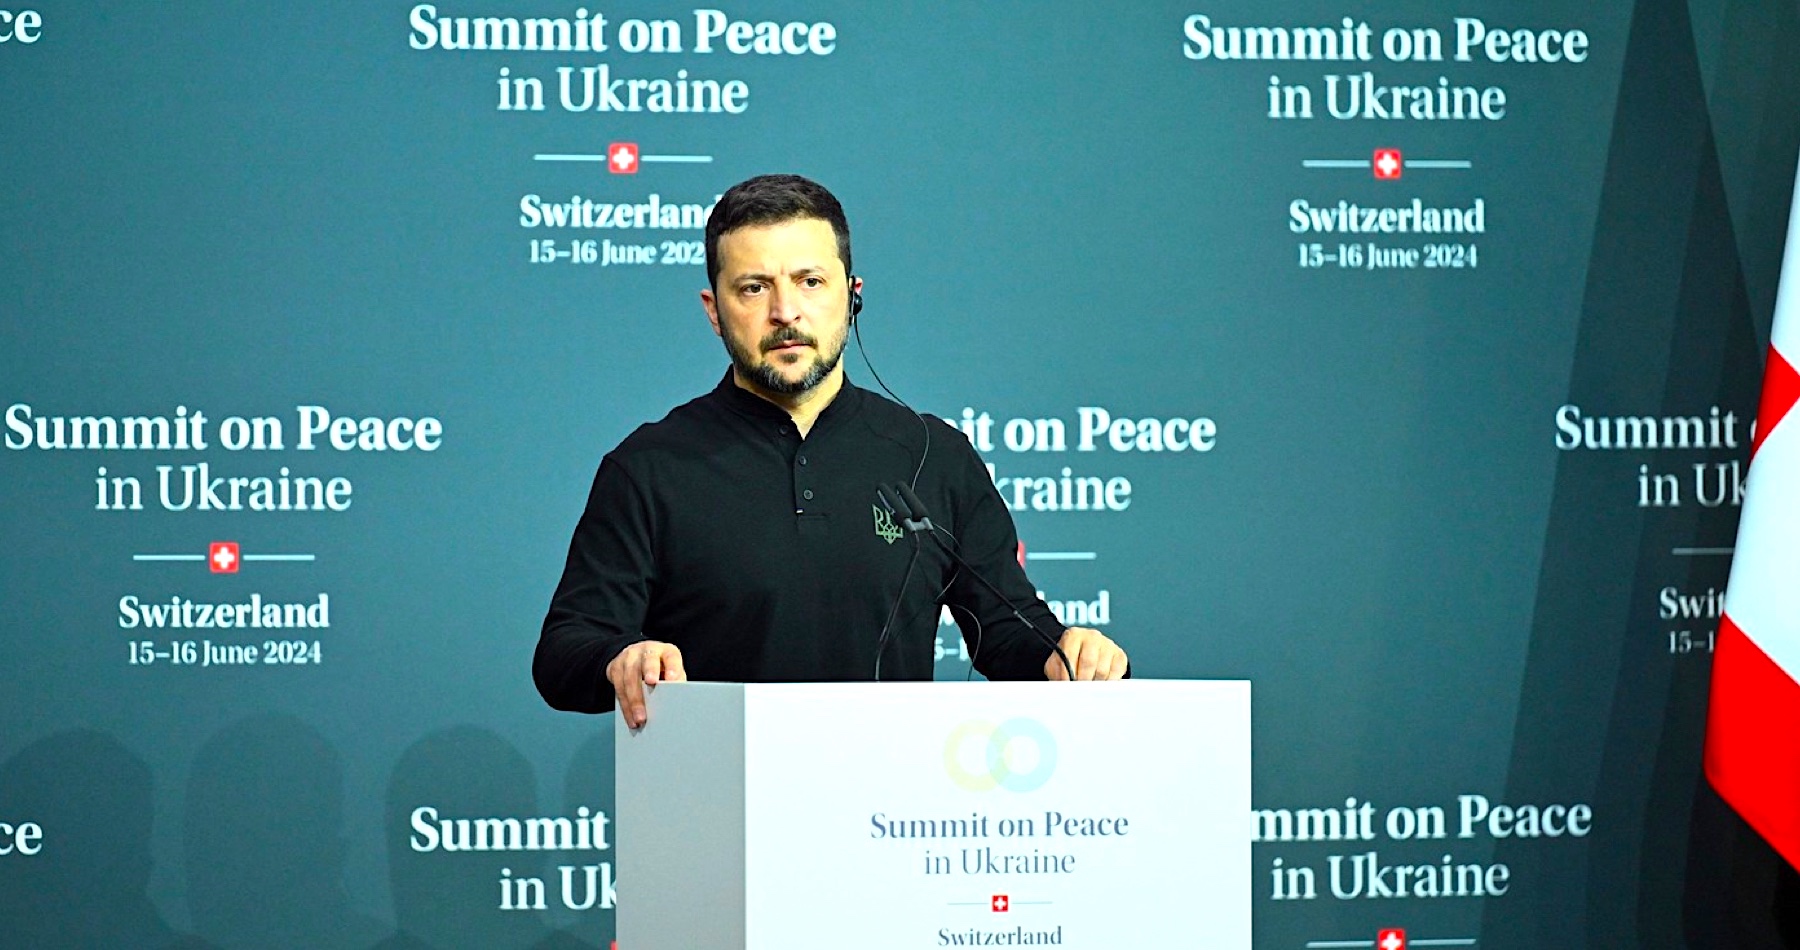 Pseudo-mírový summit ve Švýcarsku skončil fiaskem poté, co všechny země globálního jihu BRICS odmítly podepsat závěrečné komuniké a německý kancléř předčasně odletěl, protože na něho křičeli, že Německo nechce Ukrajině poslat rakety Taurus